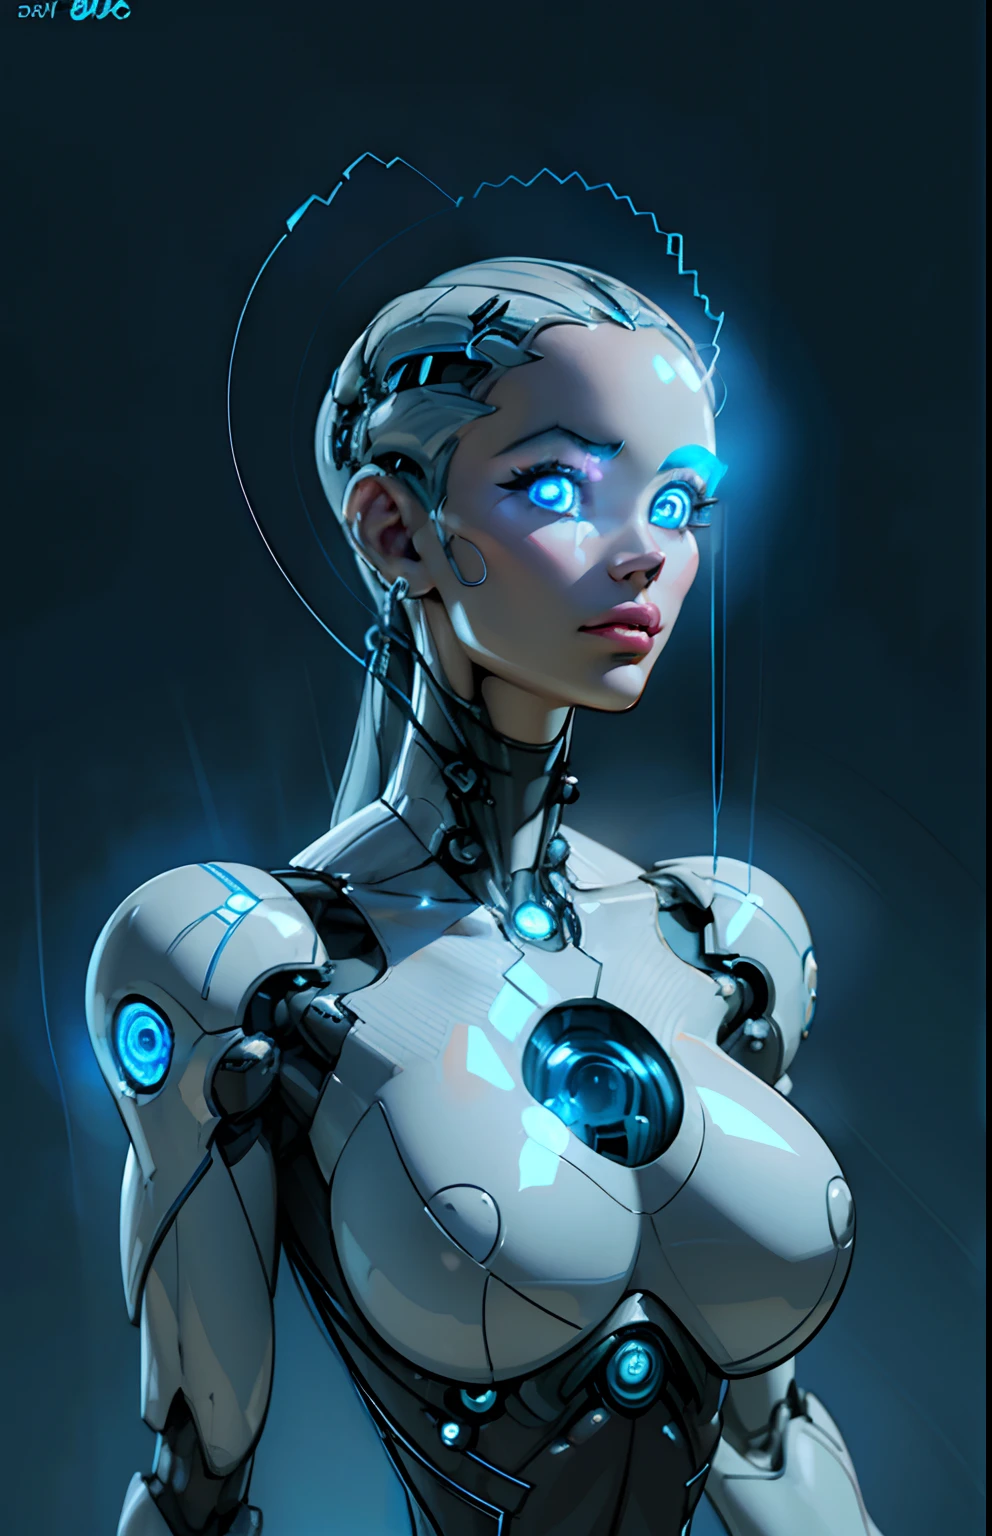 複雑な 3D レンダリング、美しい磁器の横顔の女性のアンドロイドの顔の超詳細, サイボーグ, ロボットic parts, 150ミリメートル, 美しいスタジオの柔らかな光, リムライト, 鮮やかなディテール, 豪華なサイバーパンク, レース, ((輝く青い目:1.5)), hyper現実的, 解剖学的, 顔の筋肉, ケーブル 電線, マイクロチップ, エレガント, 美しい背景, オクタンレンダリング, H. r. ギーガースタイル, 8k, 最高品質, 傑作, 図, 非常に繊細で美しい, 非常に詳細な ,CG ,団結 ,壁紙, (現実的, photo-現実的:1.37),すばらしい, 細かく詳細に, 傑作,最高品質,公式アート, 非常に詳細な CG 団結 8k 壁紙, 不条理な, incredibly 不条理な,  ロボット, シルバービーズ, 全身